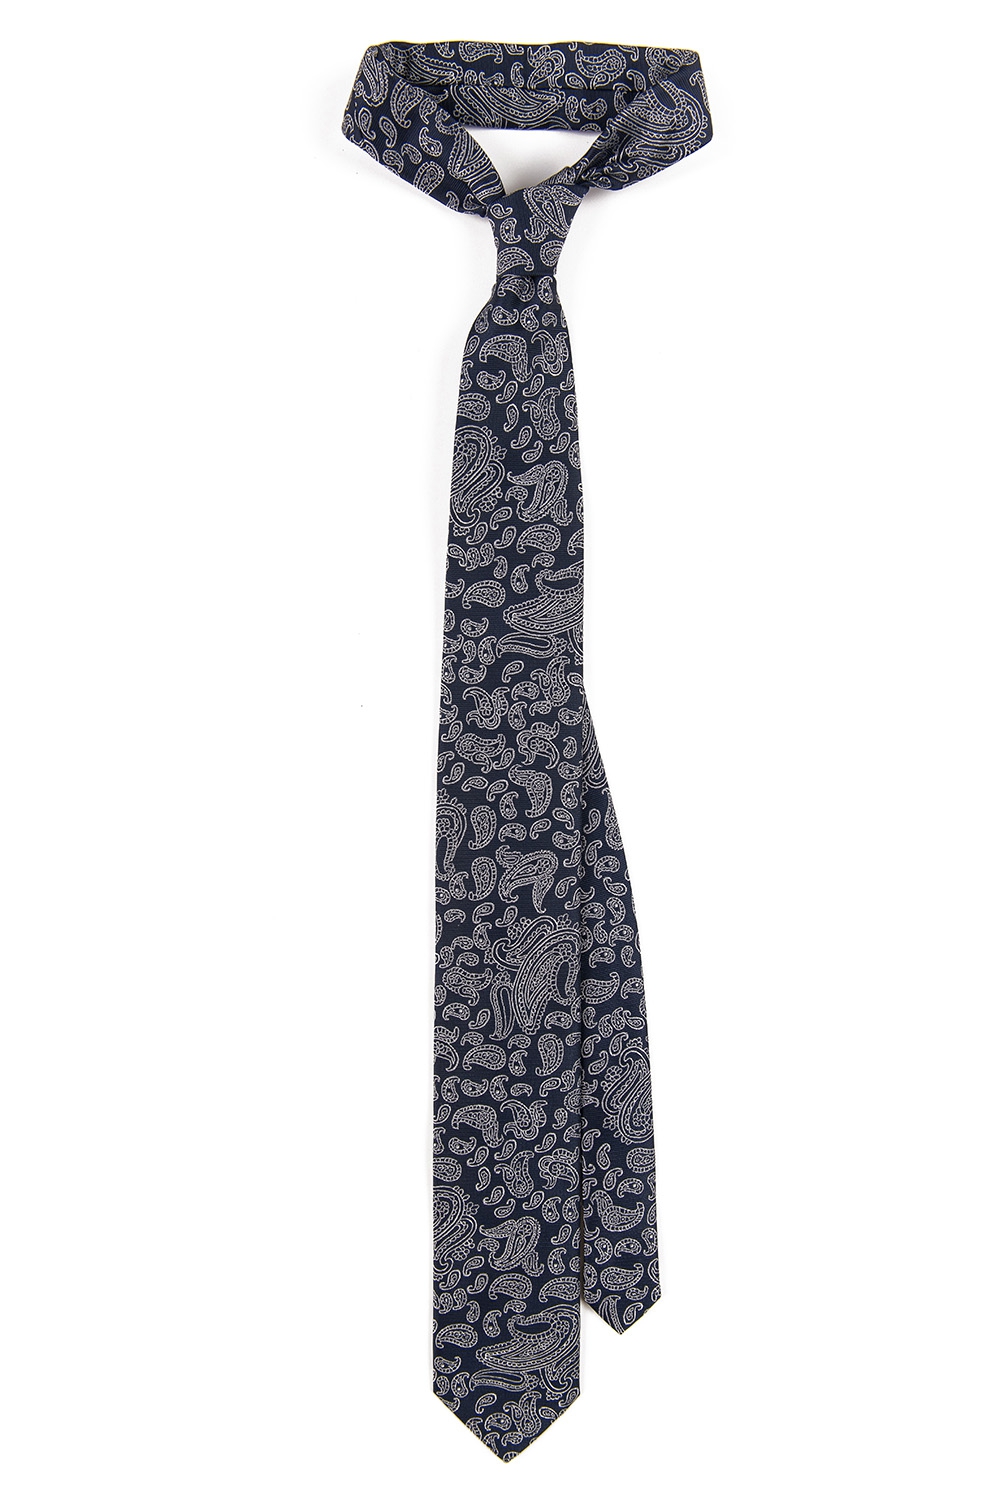 Cravata  poliester bleumarin lira 0